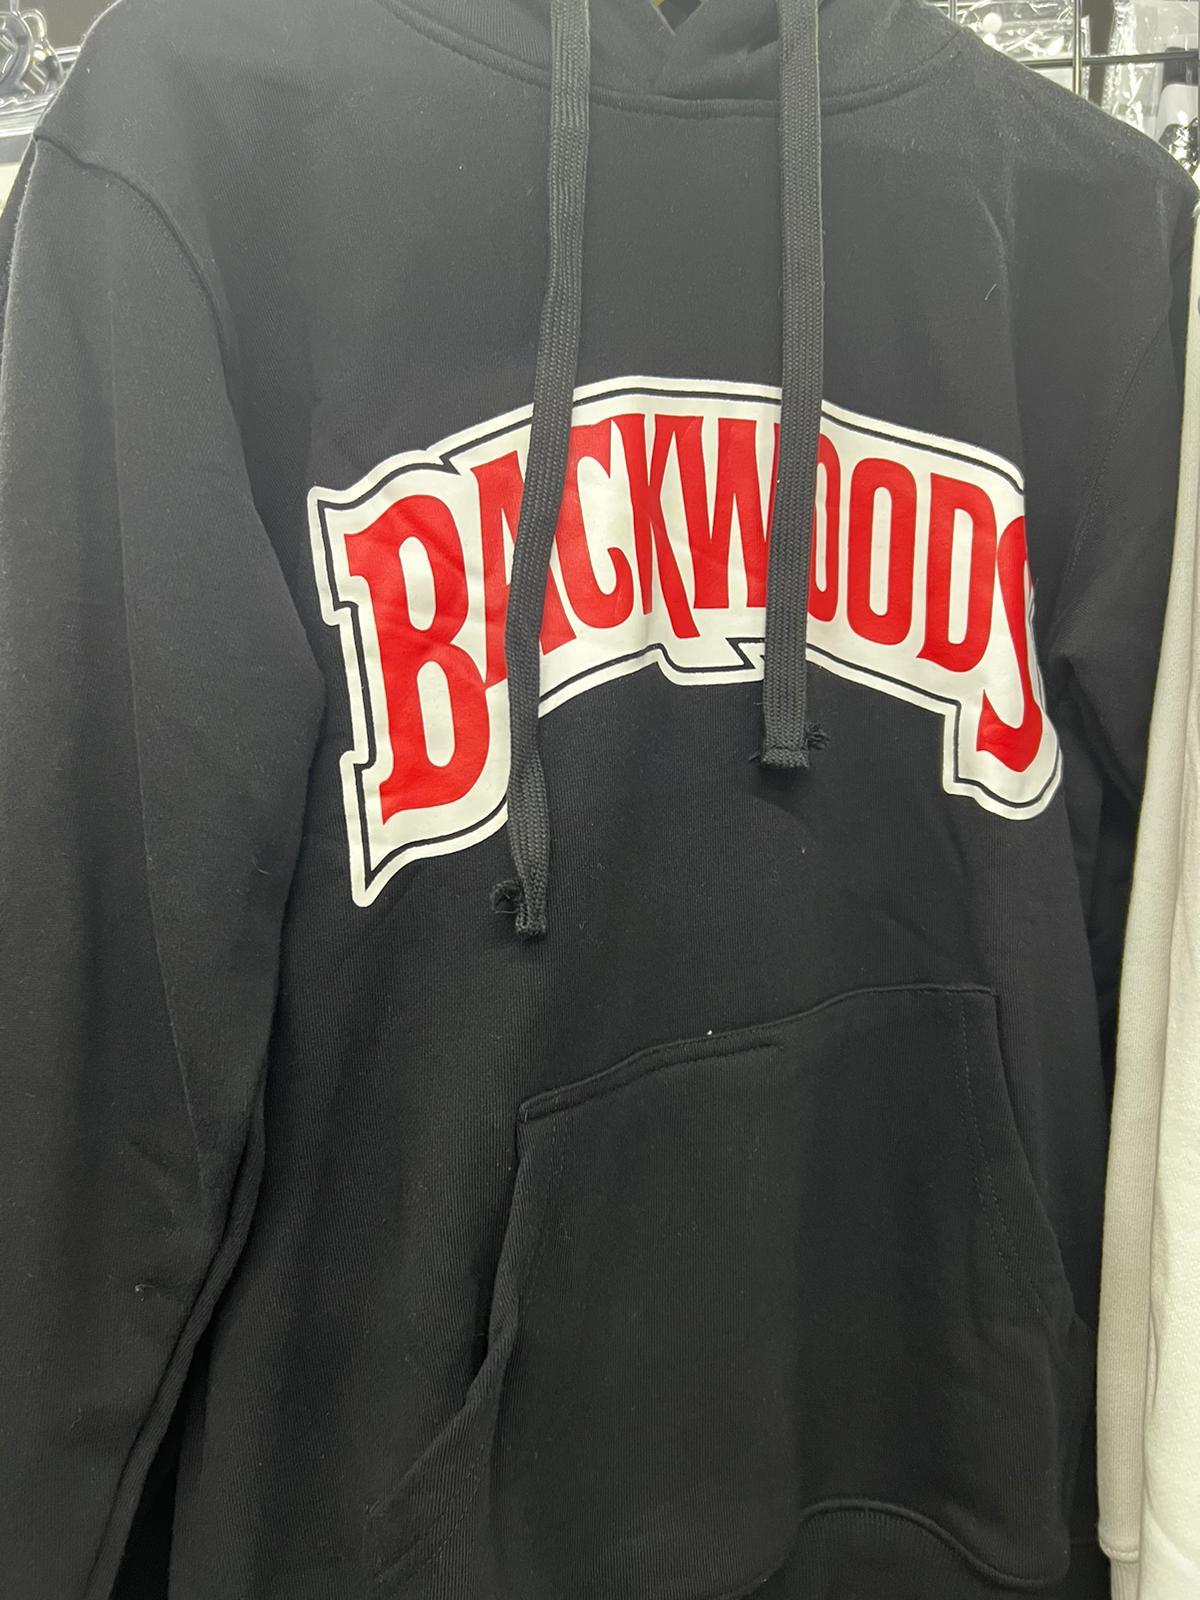 Backwoods Hoodie - Black (3X-Large)